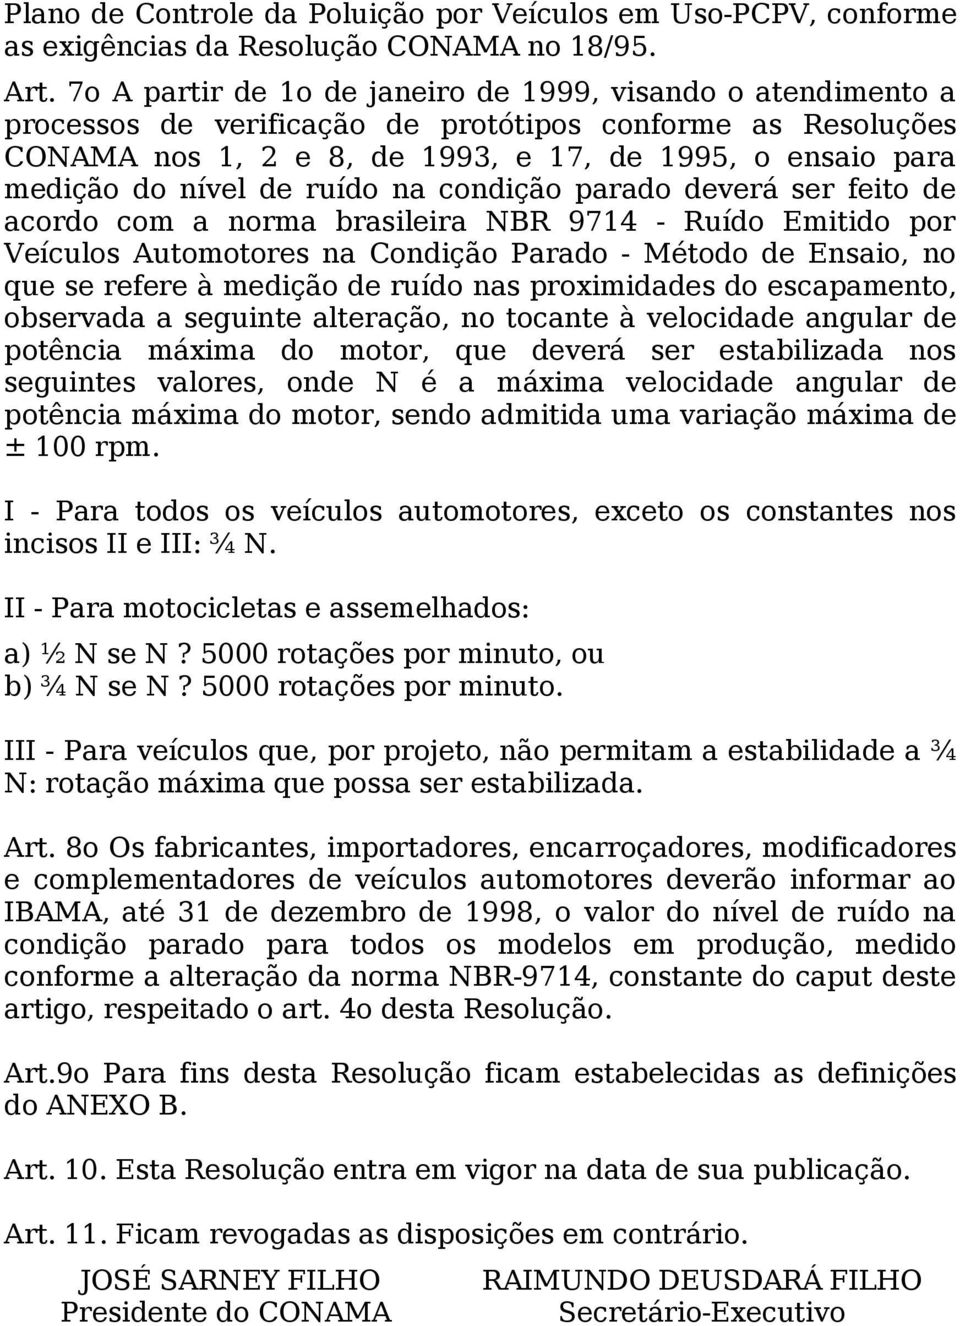 de ruído na condição parado deverá ser feito de acordo com a norma brasileira NBR 9714 - Ruído Emitido por Veículos Automotores na Condição Parado - Método de Ensaio, no que se refere à medição de